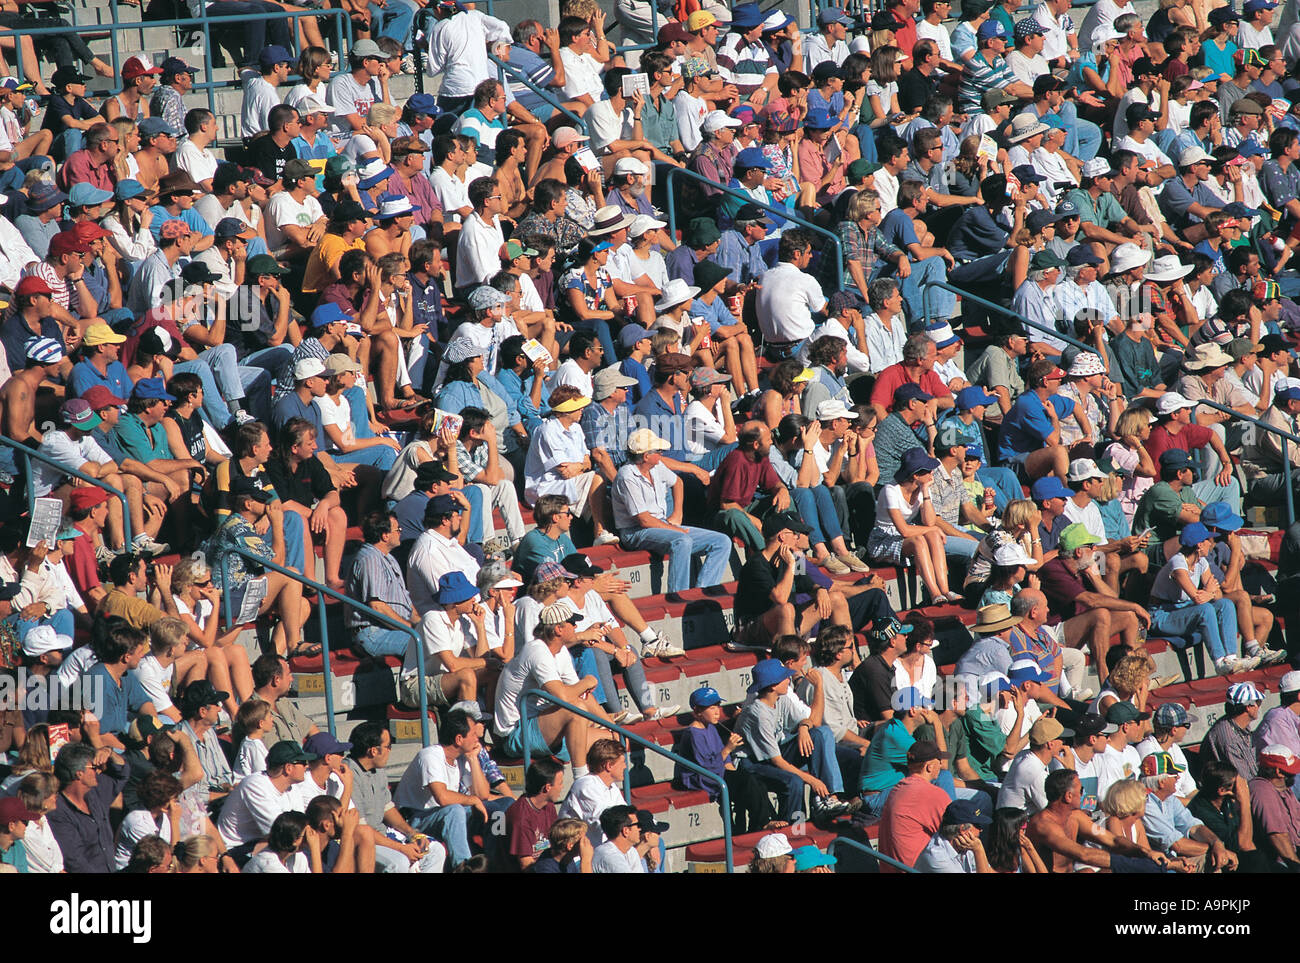 Grande foule de spectateurs au match de rugby blanc Cape Town Afrique du Sud Banque D'Images